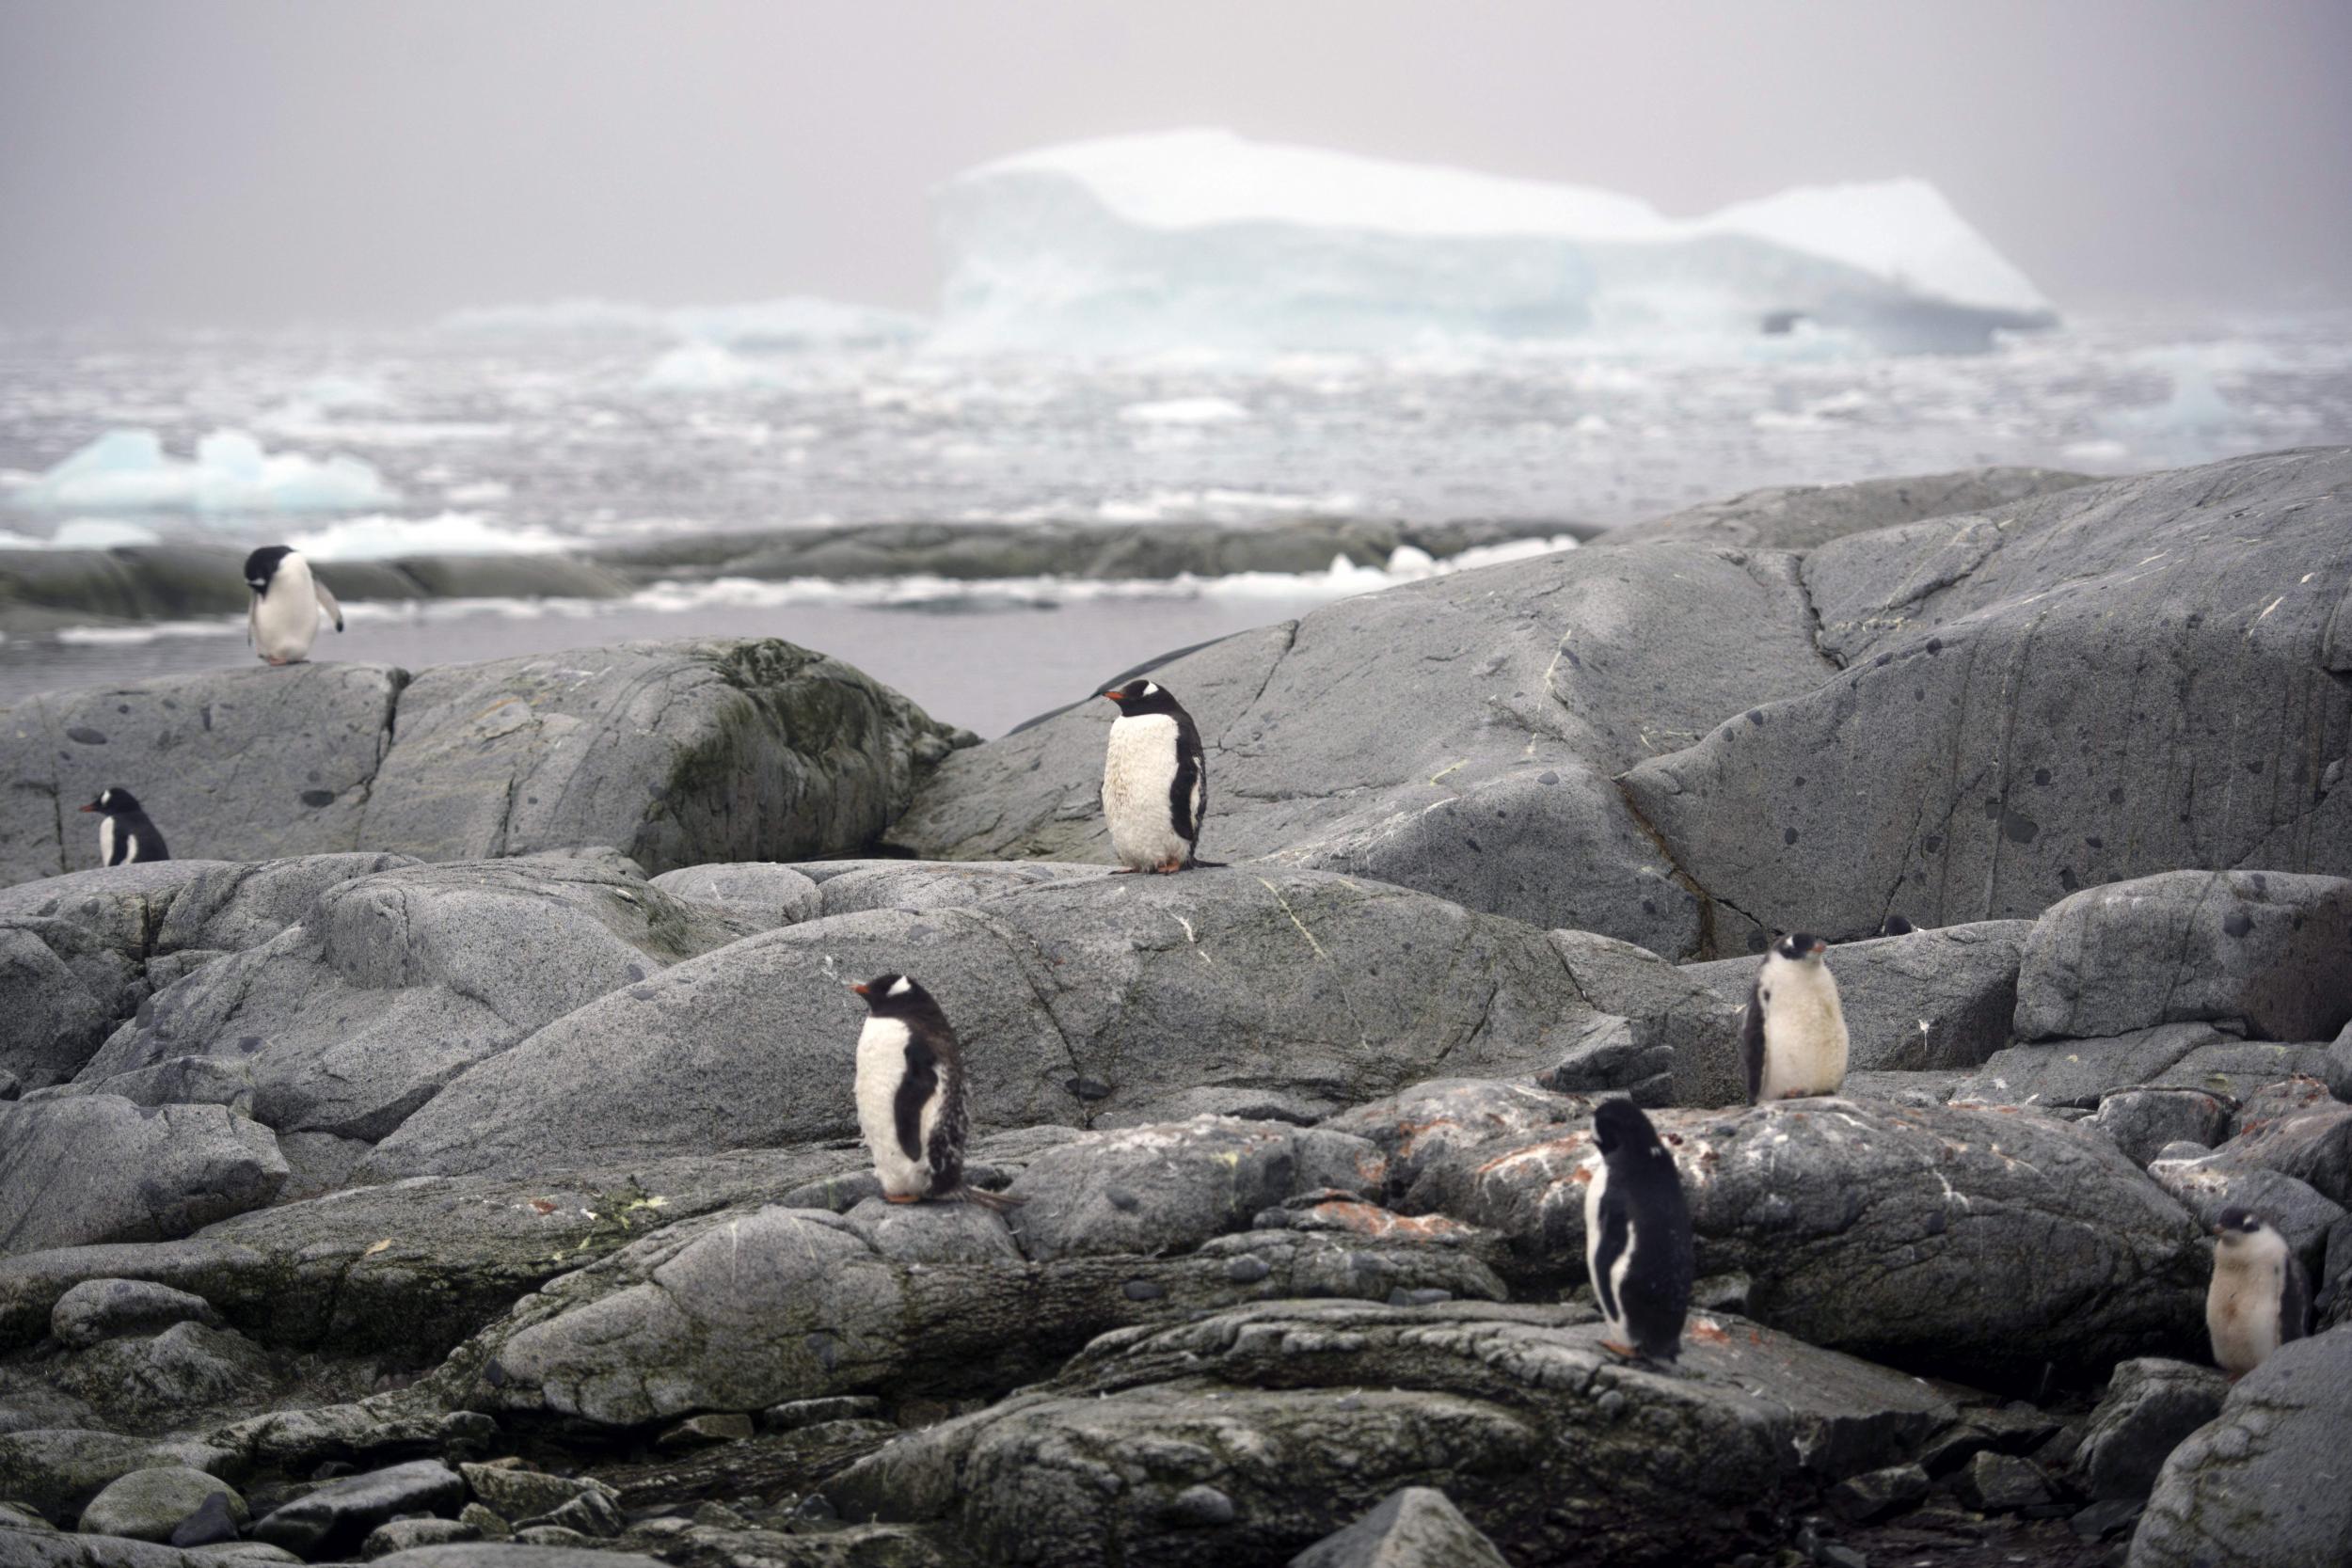 A trip to Antarctica brings you up close to gentoo penguins